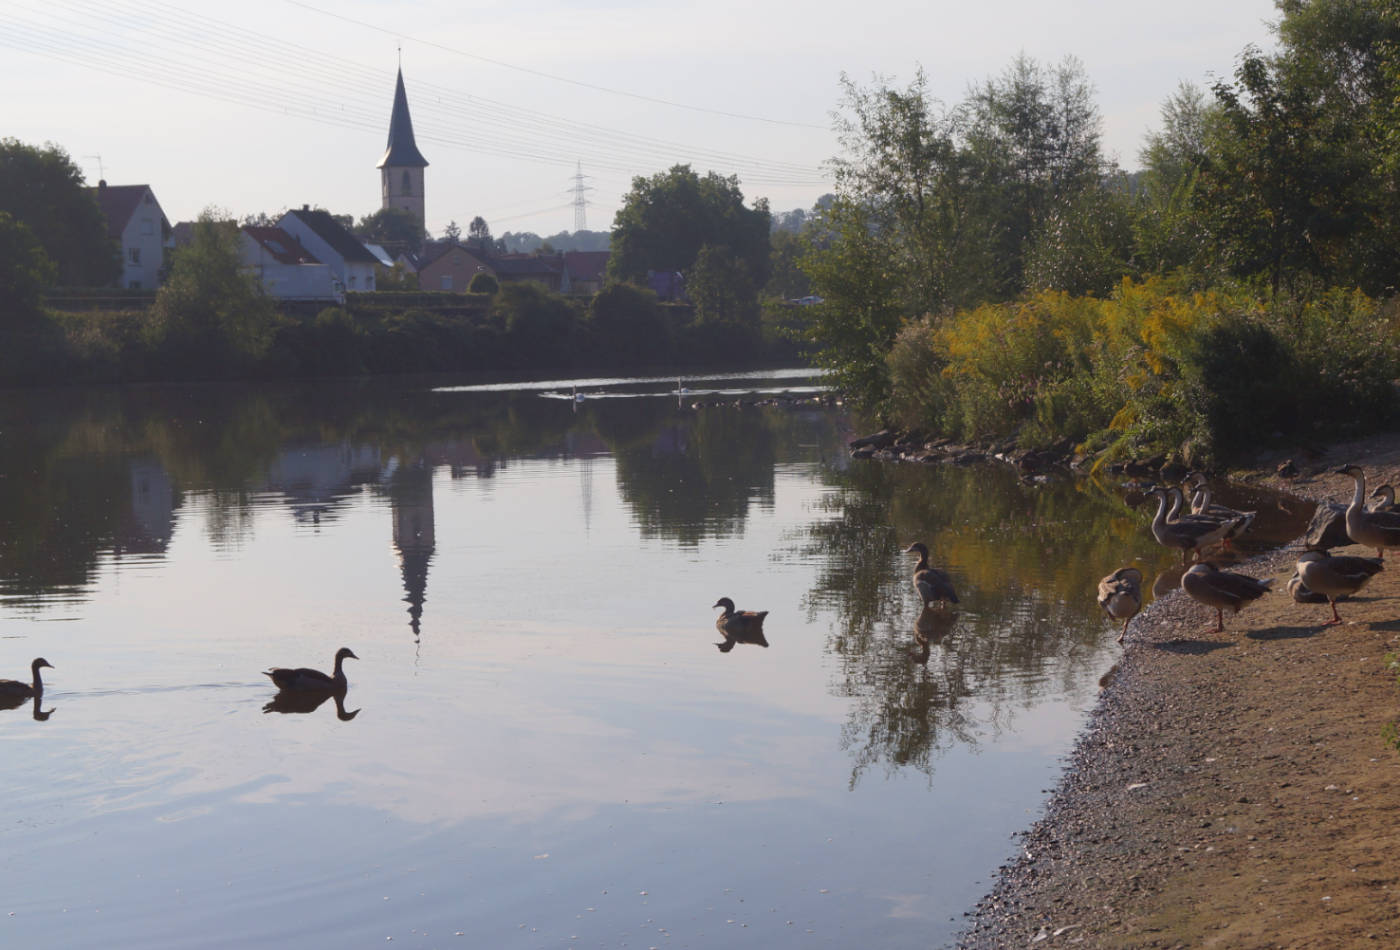 Neckarufer im Abendlicht mit Enten auf dem Wasser.